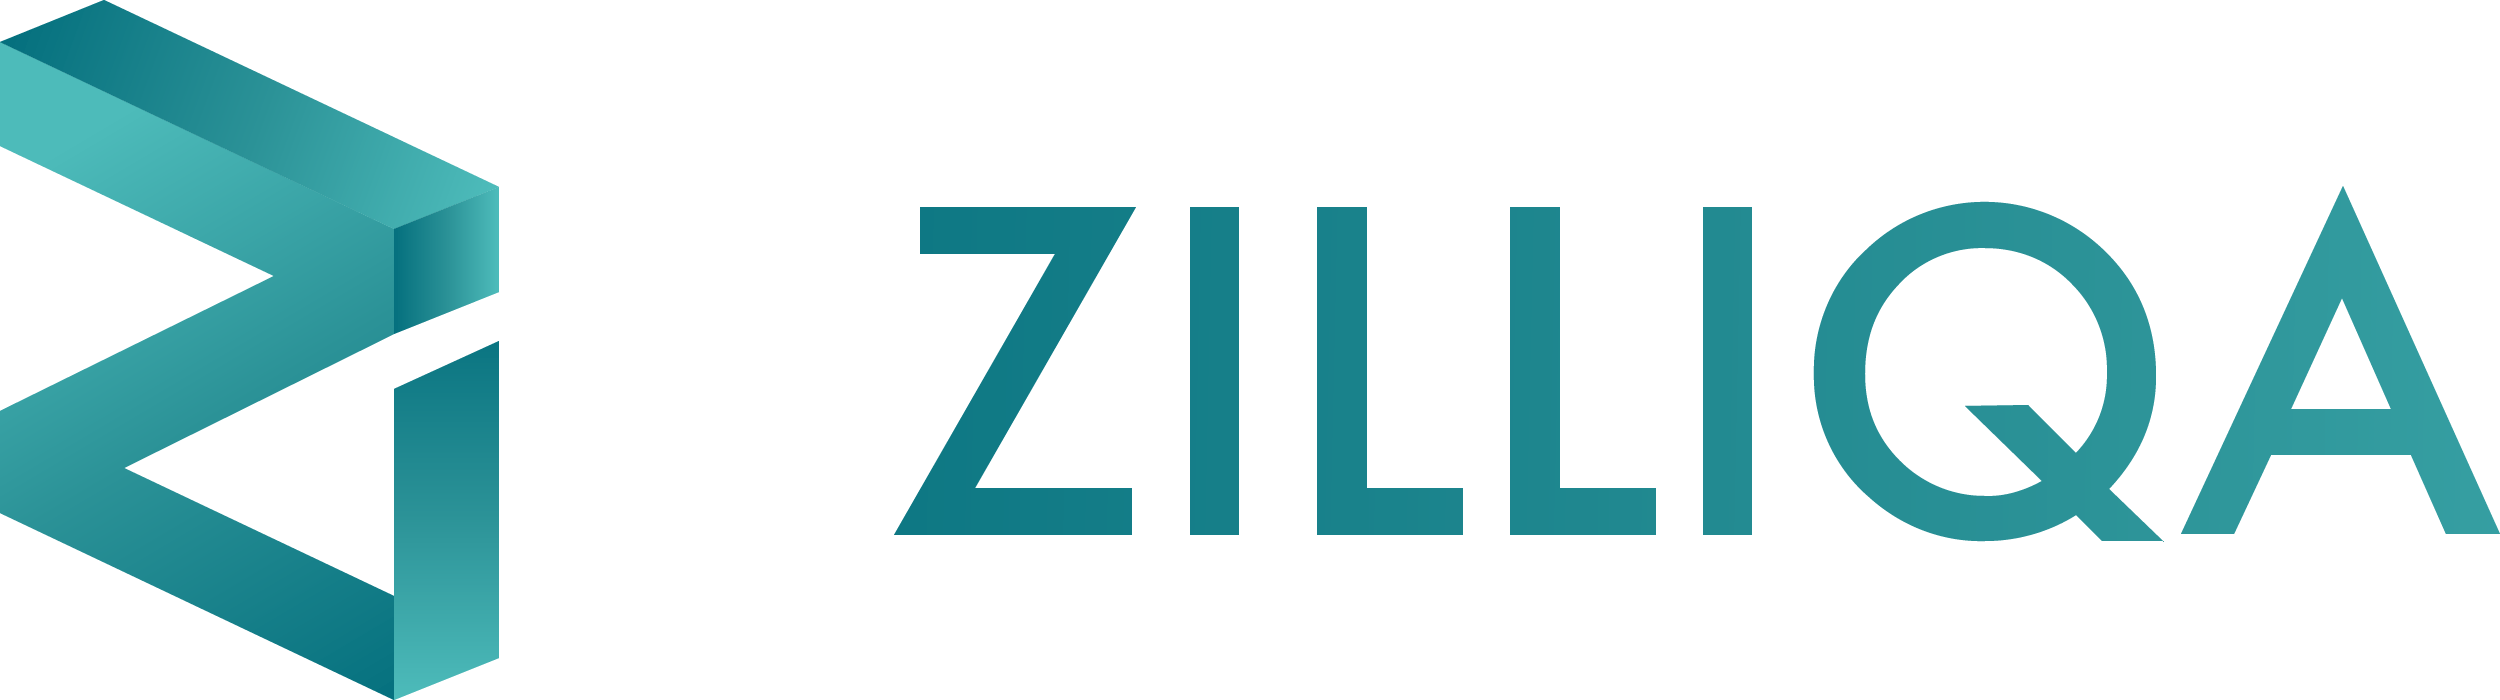 Logotipo de Zilliqa